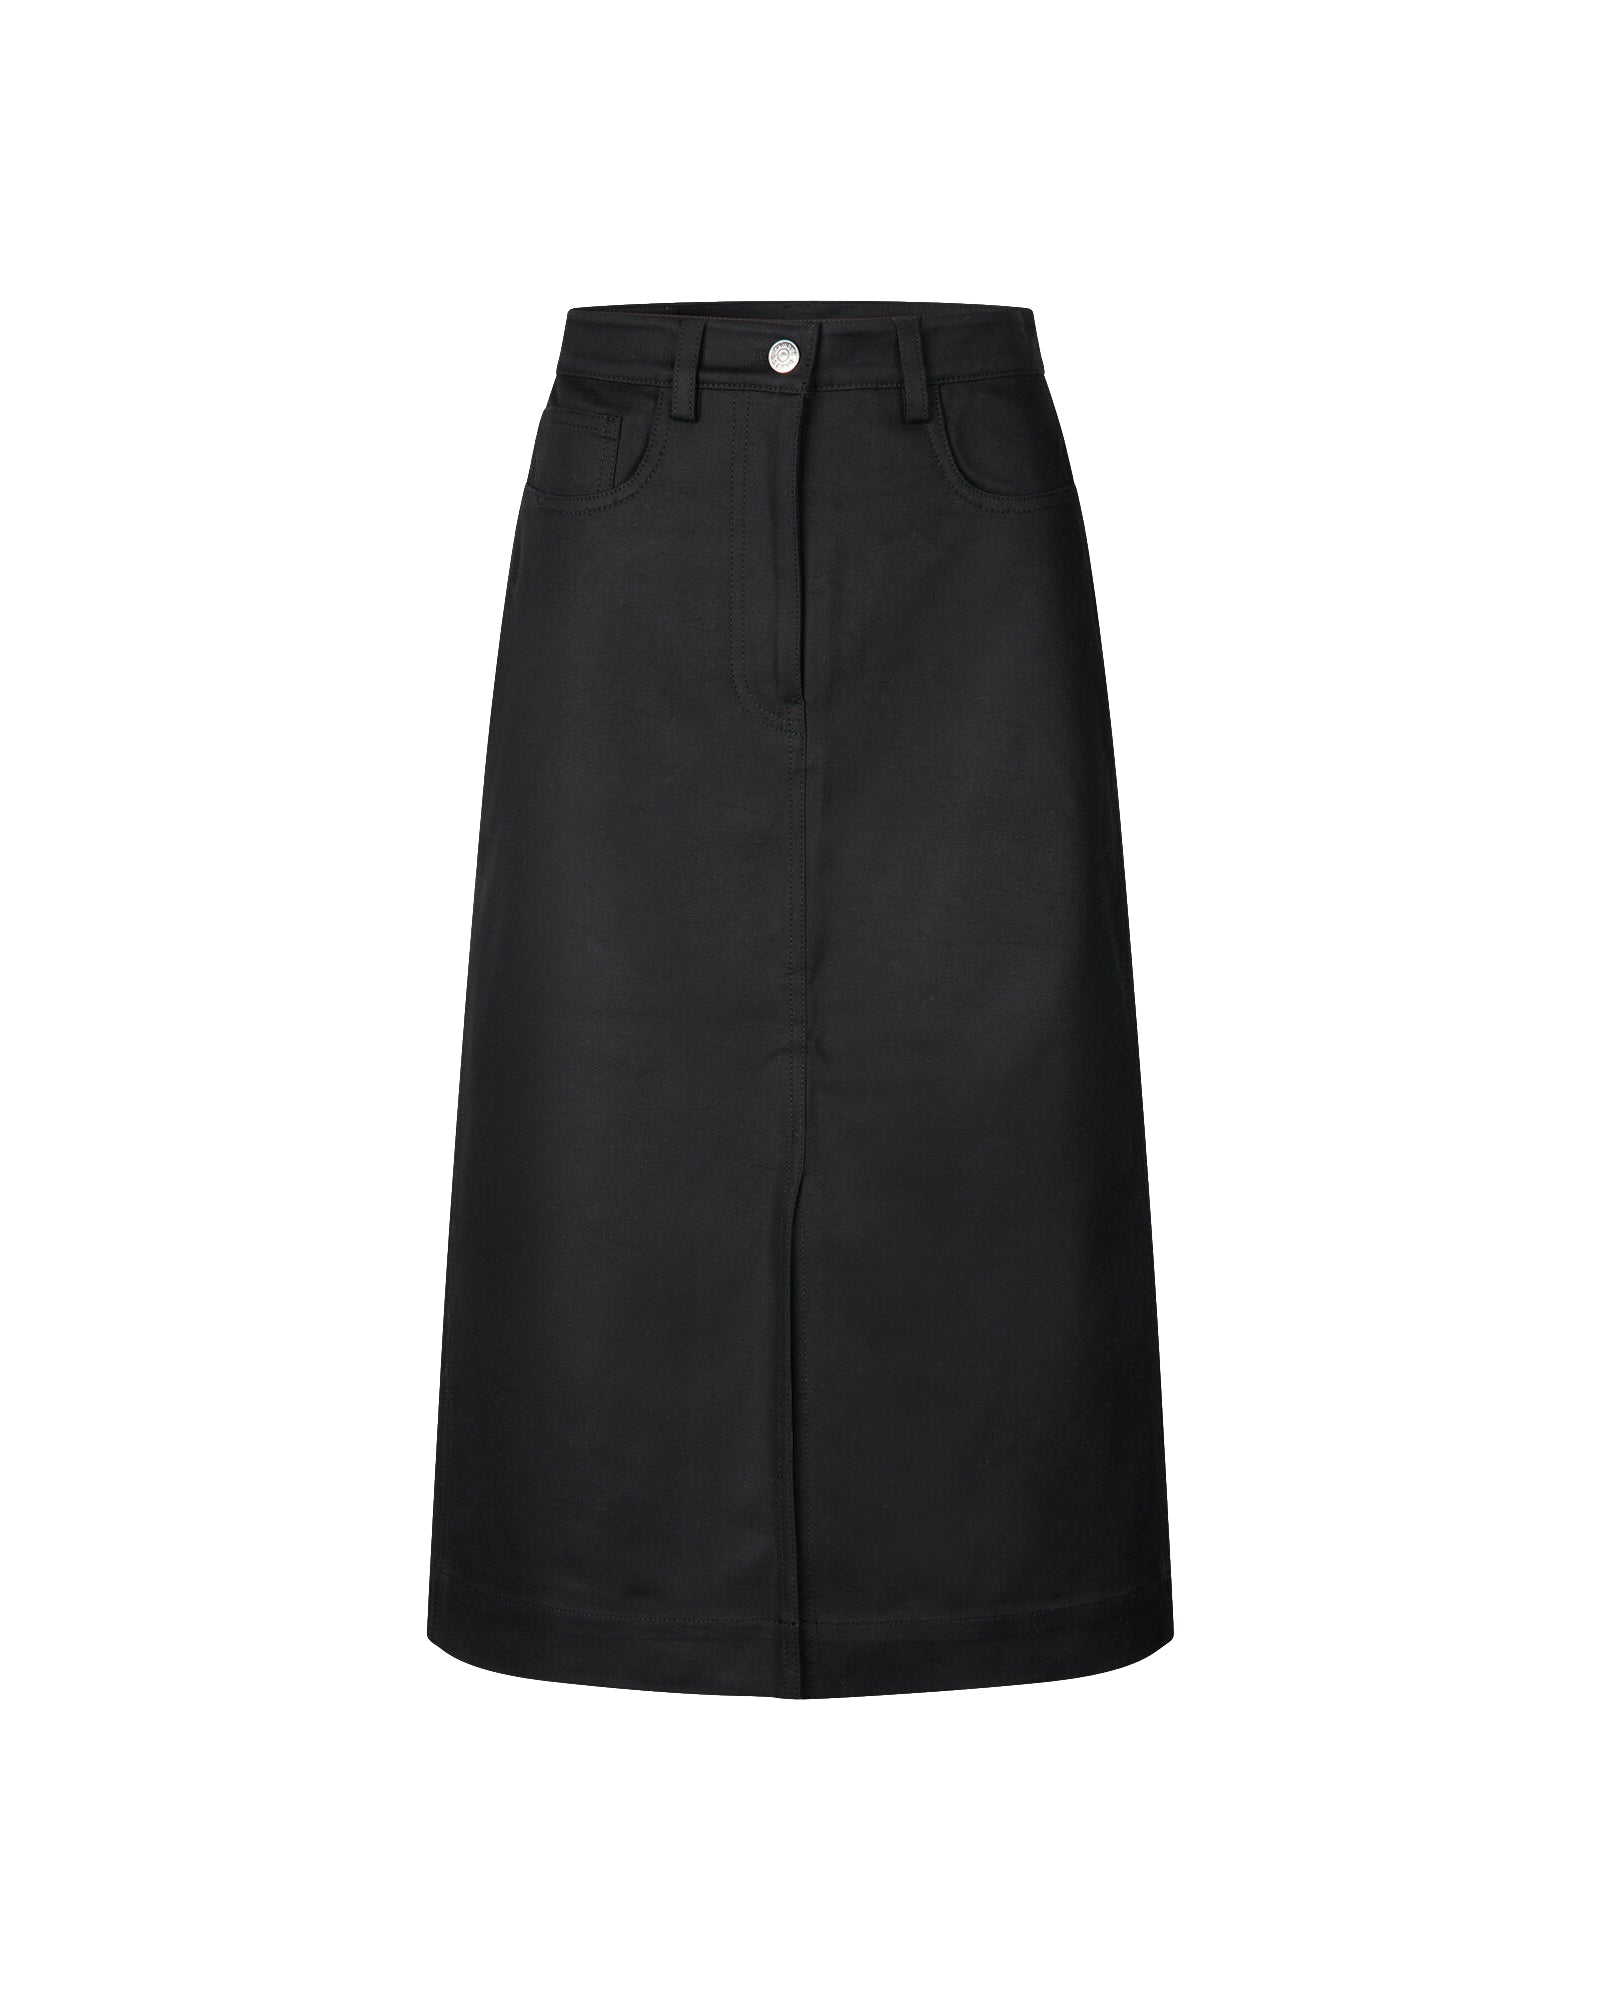 Raya Skirt 15046 - Black